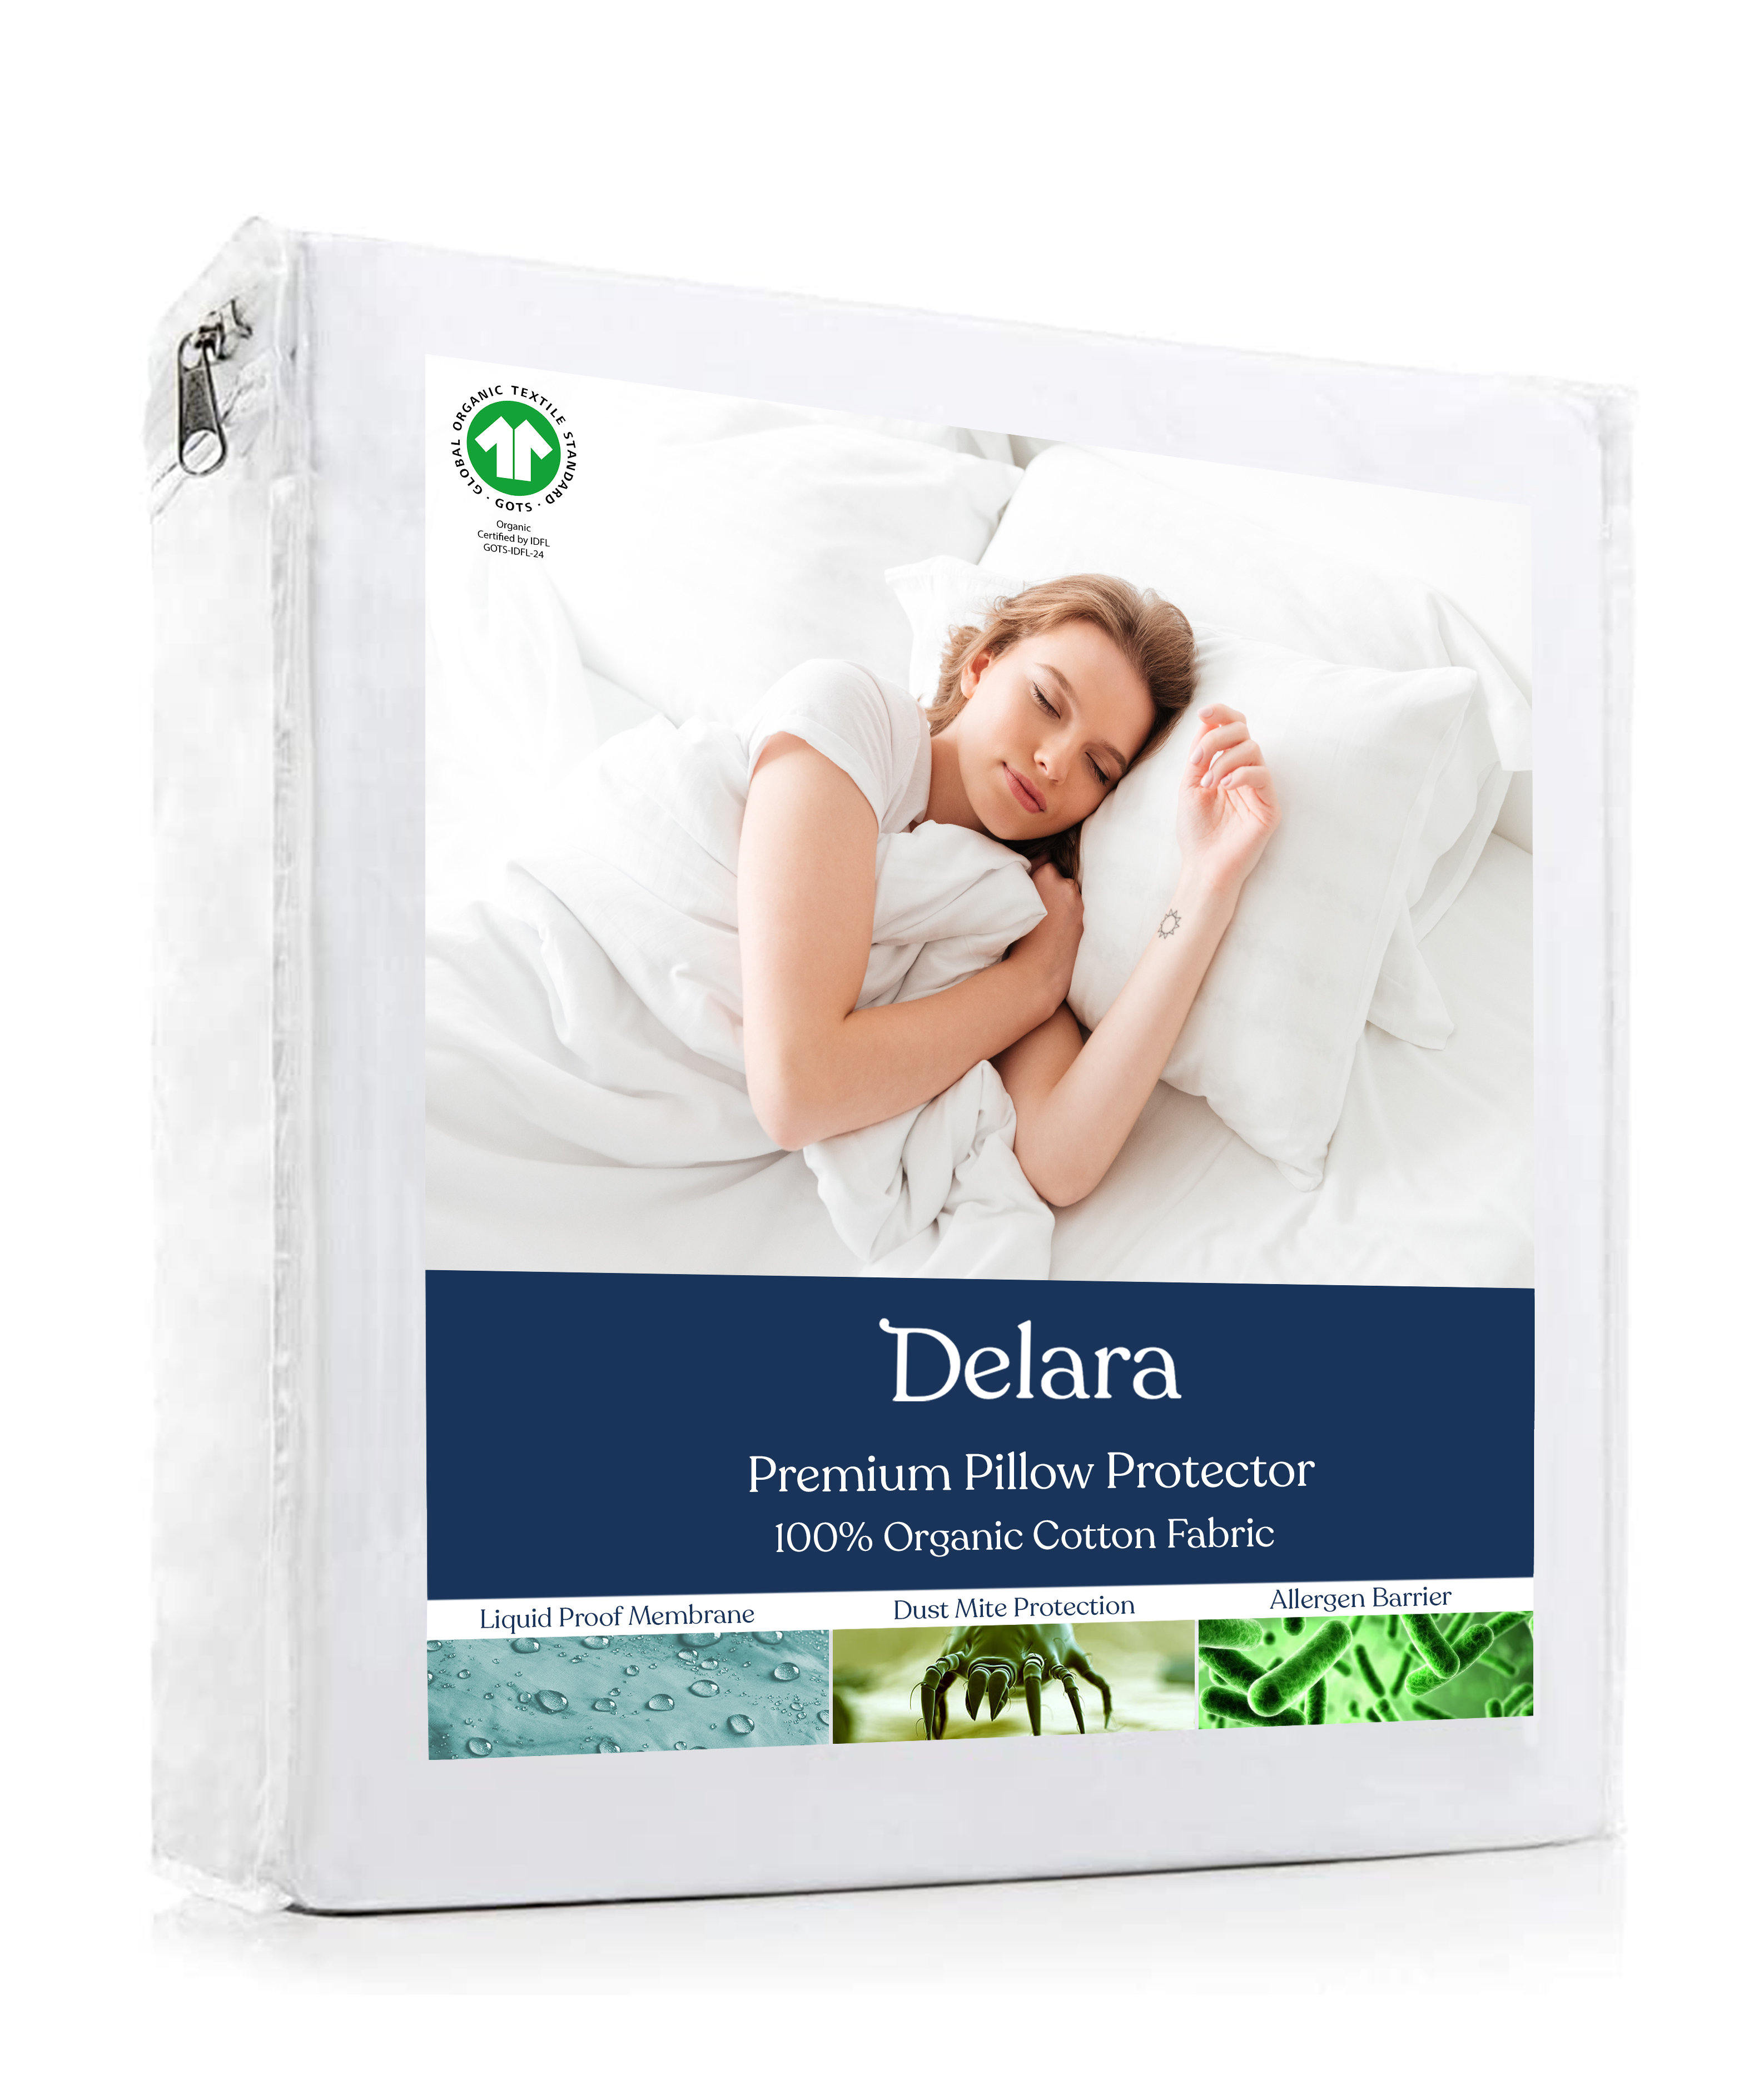 https://assets.wfcdn.com/im/23858518/compr-r85/2478/247848706/delara-gots-certified-100-organic-cotton-pillow-protector-pack-of-2.jpg